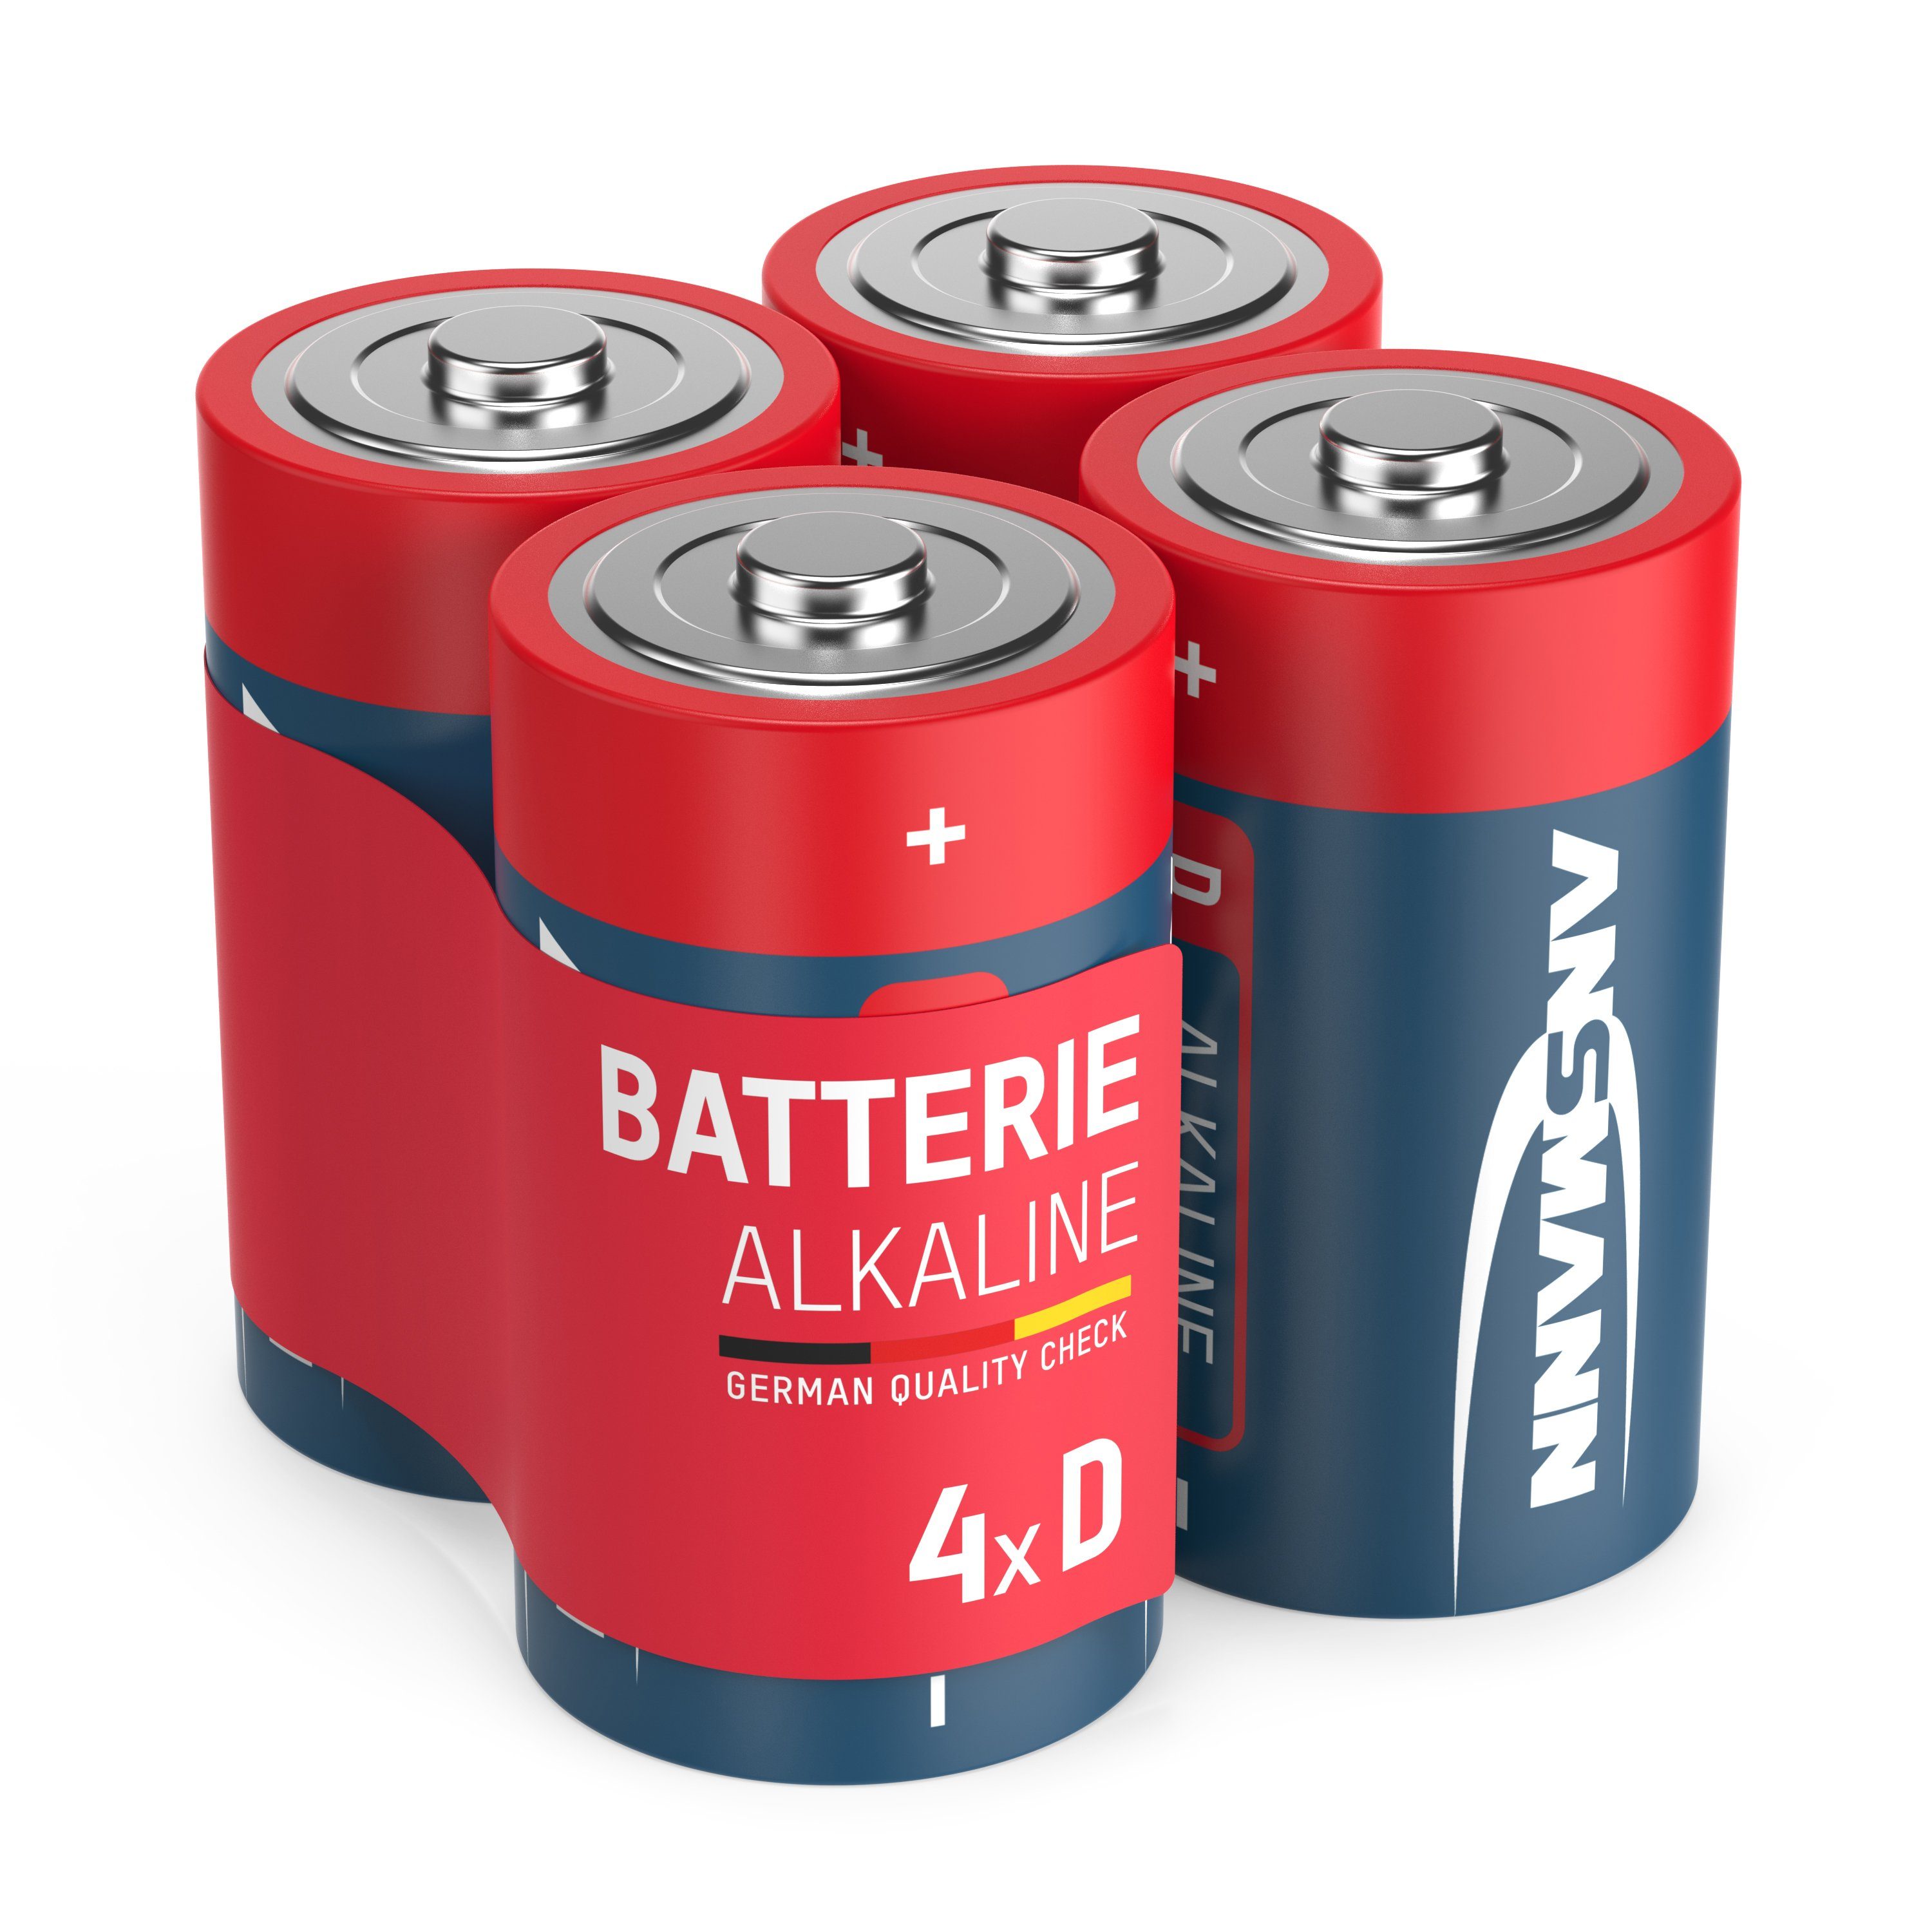 ANSMANN® Batterien Mono D LR20 1,5V 4 Stück - Alkaline Batterie auslaufsicher Batterie